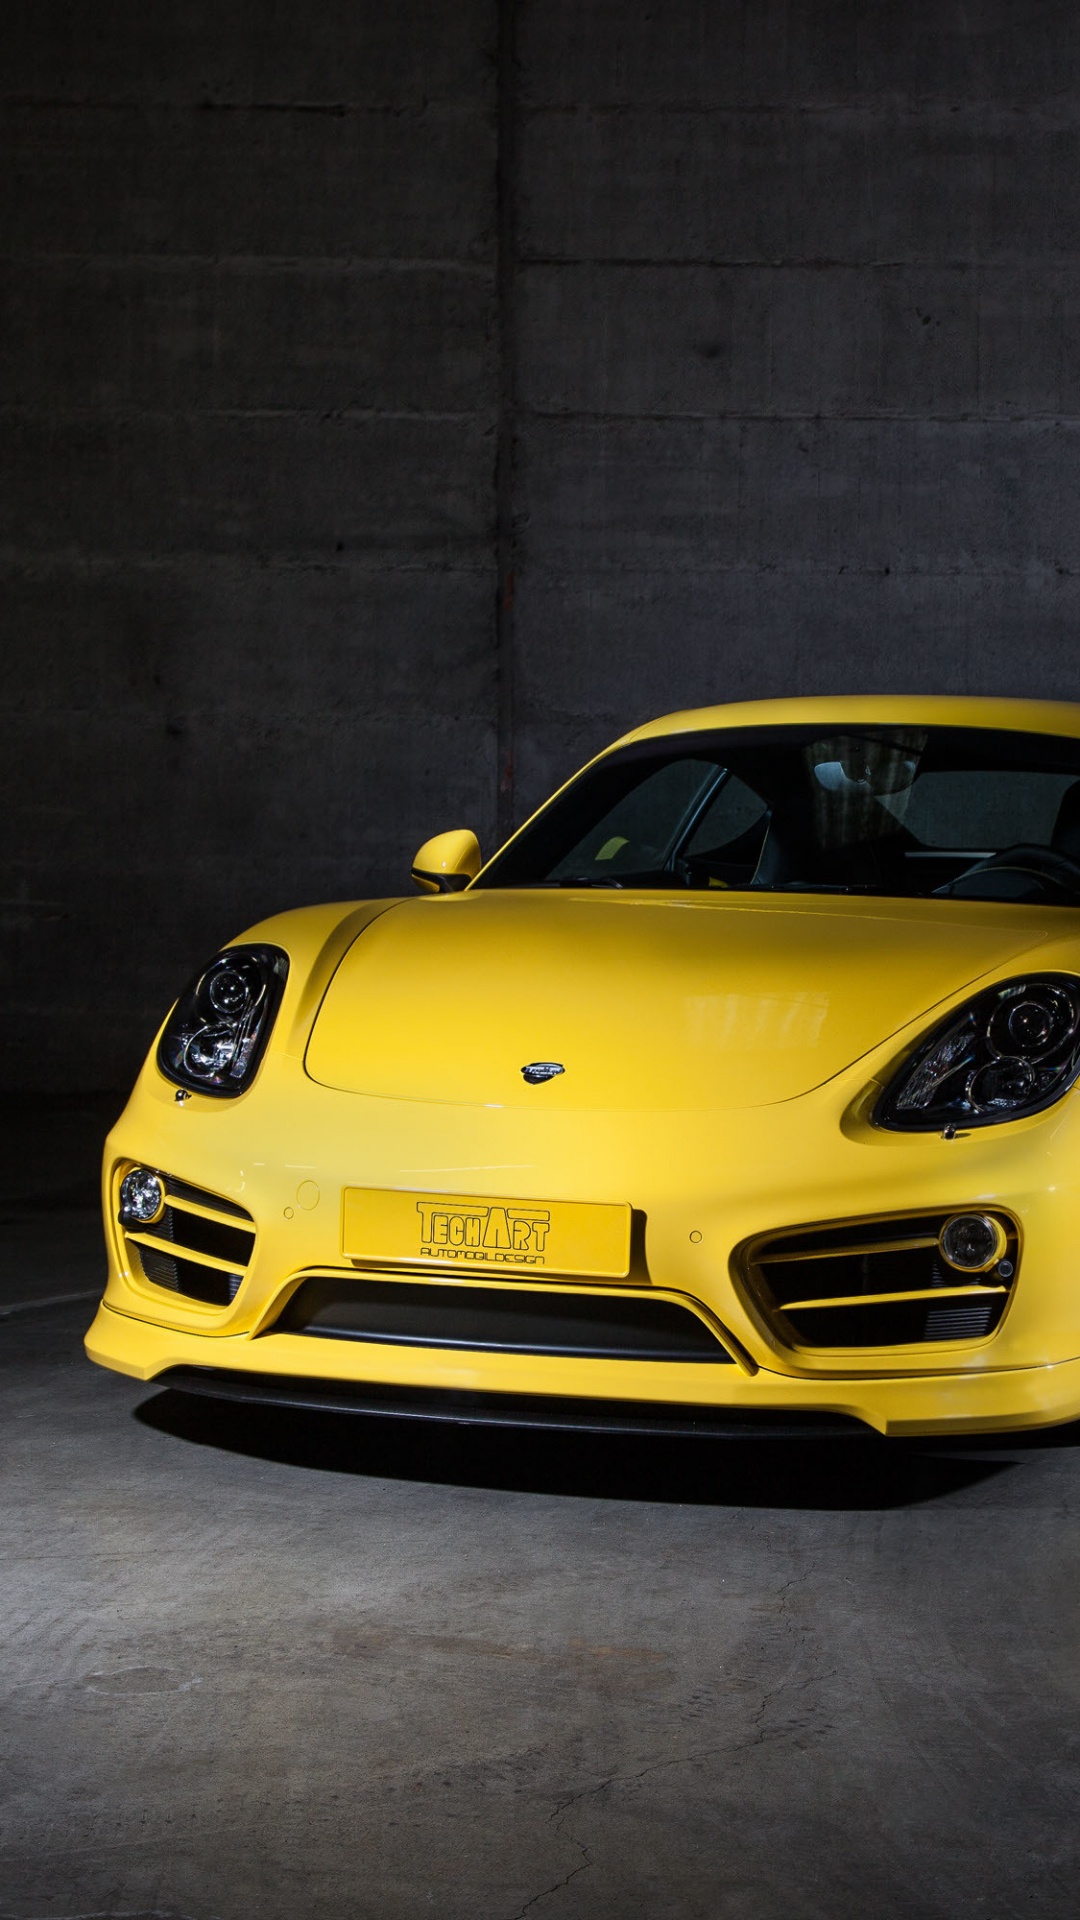 Yellow Porsche 911 Parked in a Garage. Wallpaper in 1080x1920 Resolution